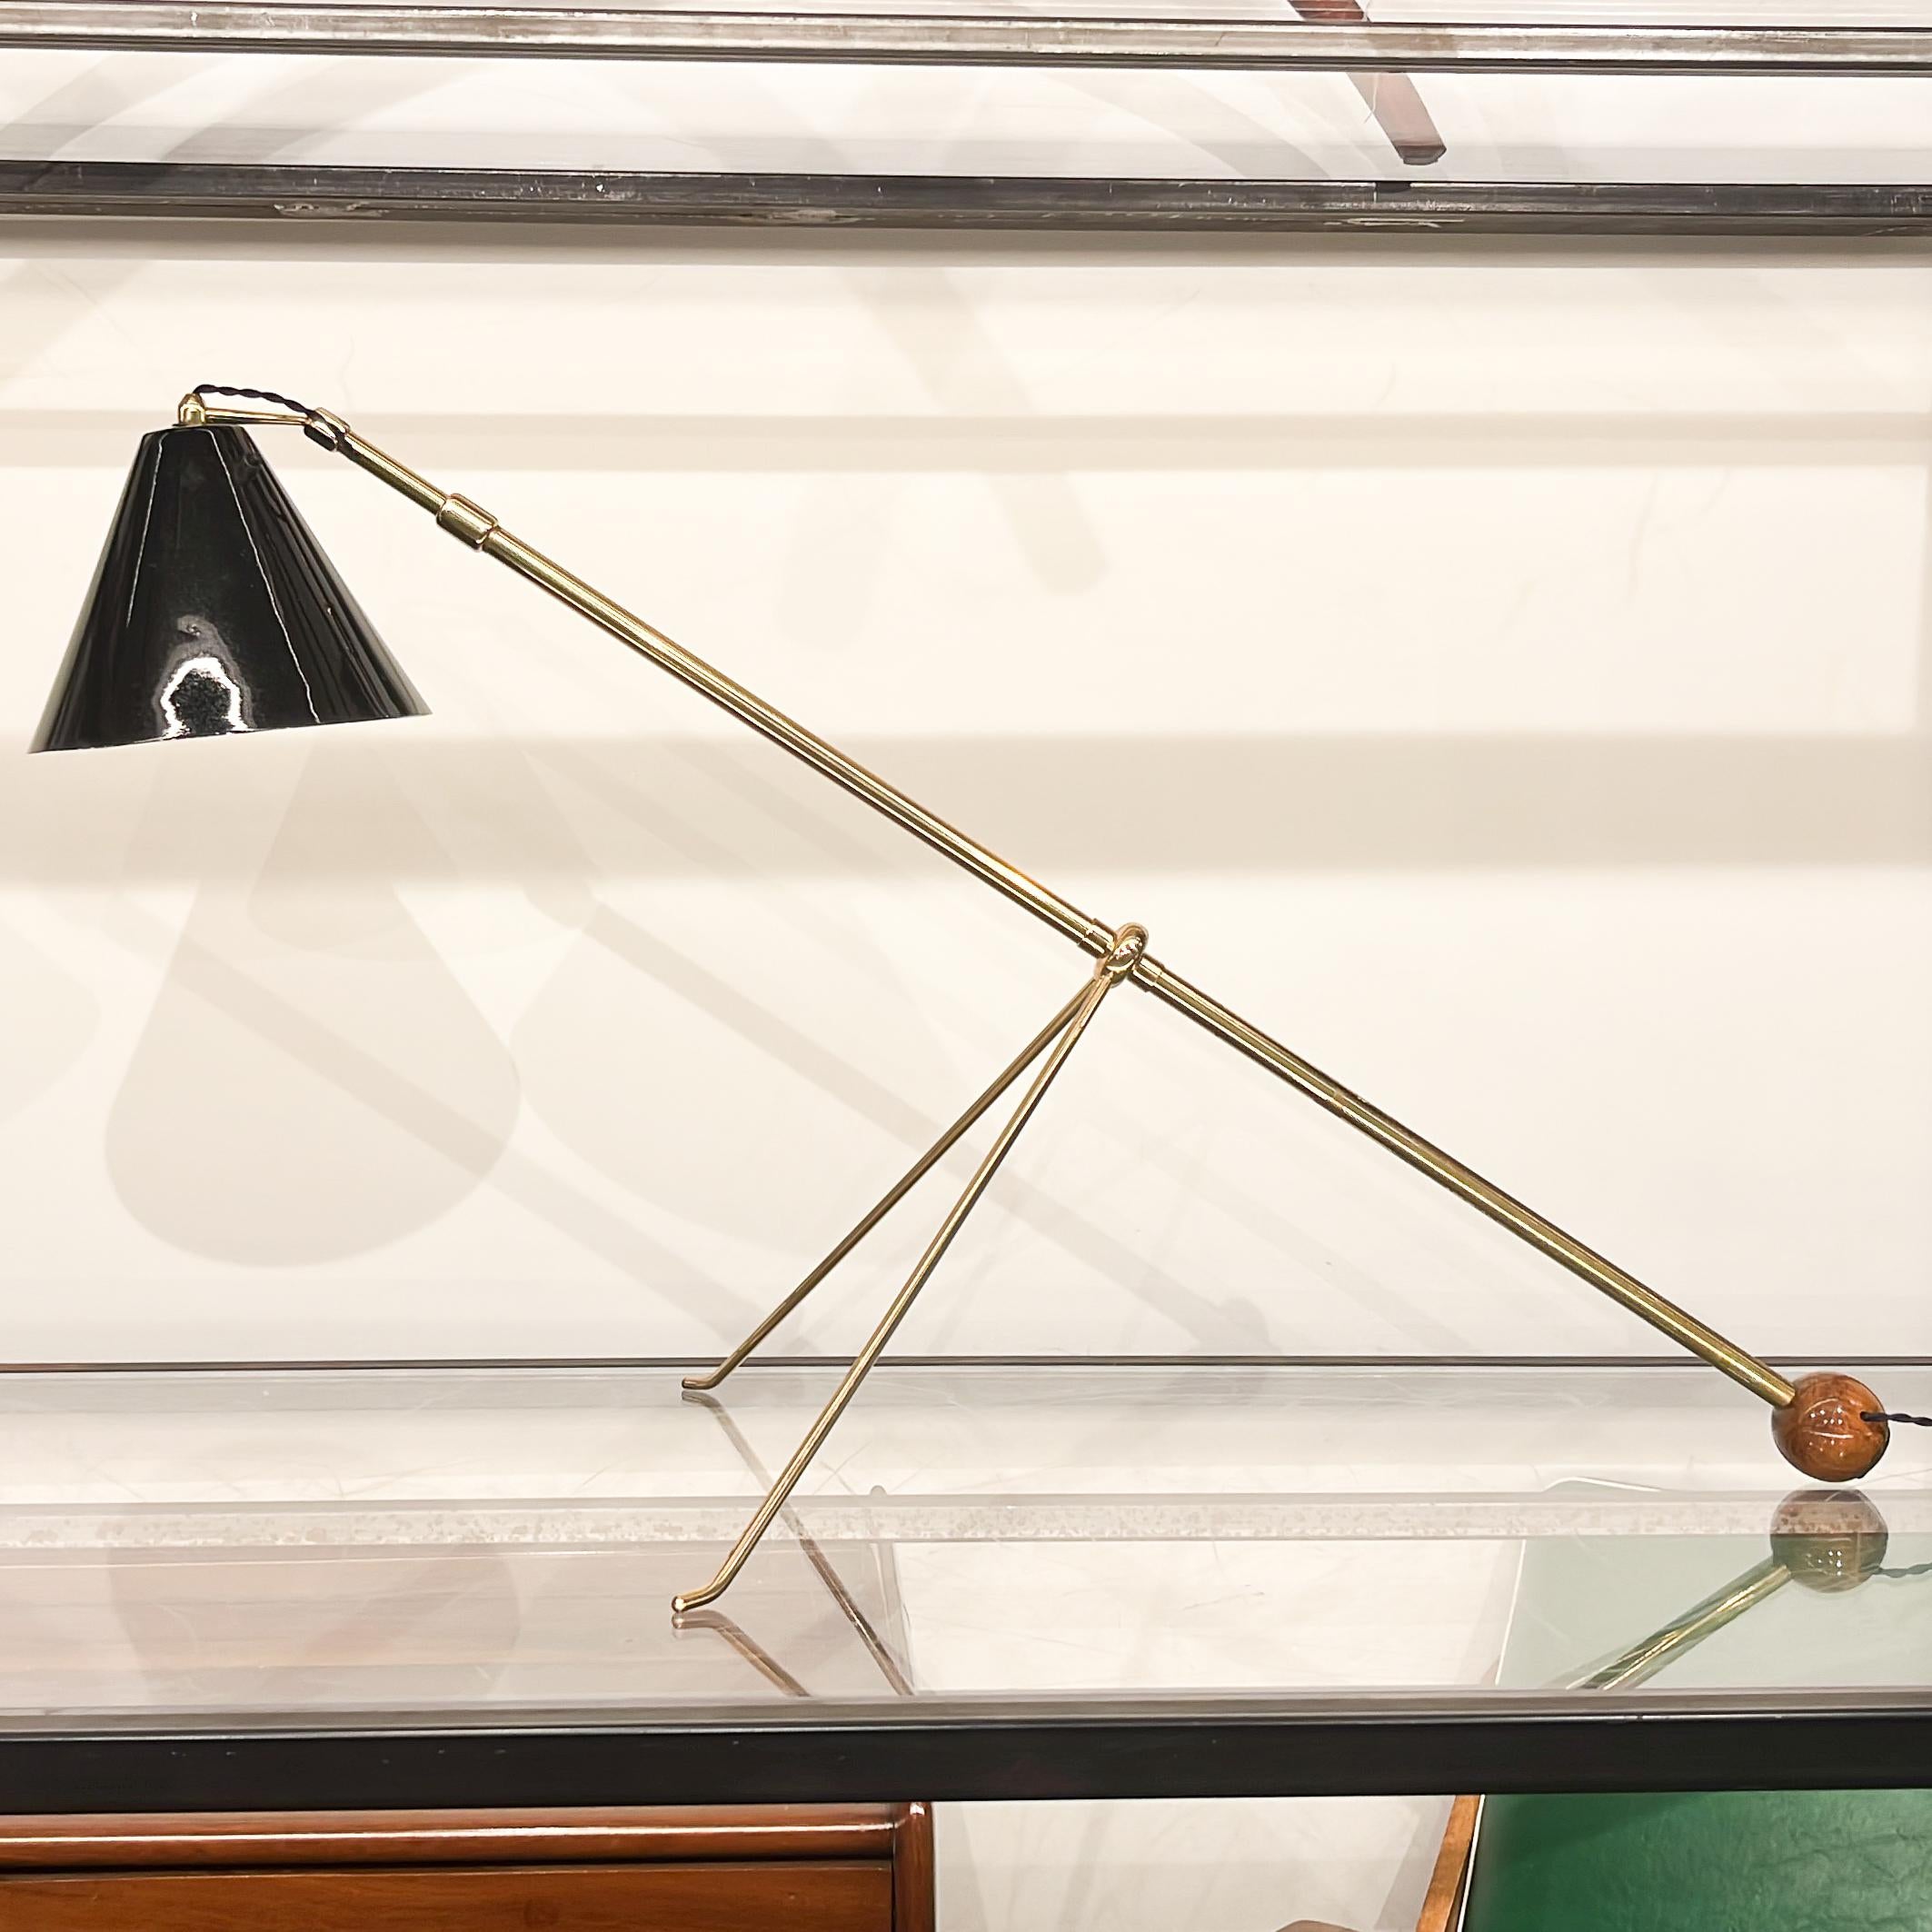 Ce lampadaire réglable moderne brésilien unique en son genre, en laiton et en bois, d'un auteur inconnu, fabriqué dans les années 60, n'est rien de moins qu'exquis !

Ce lampadaire en laiton repose sur une base en forme de trépied. Le pied central